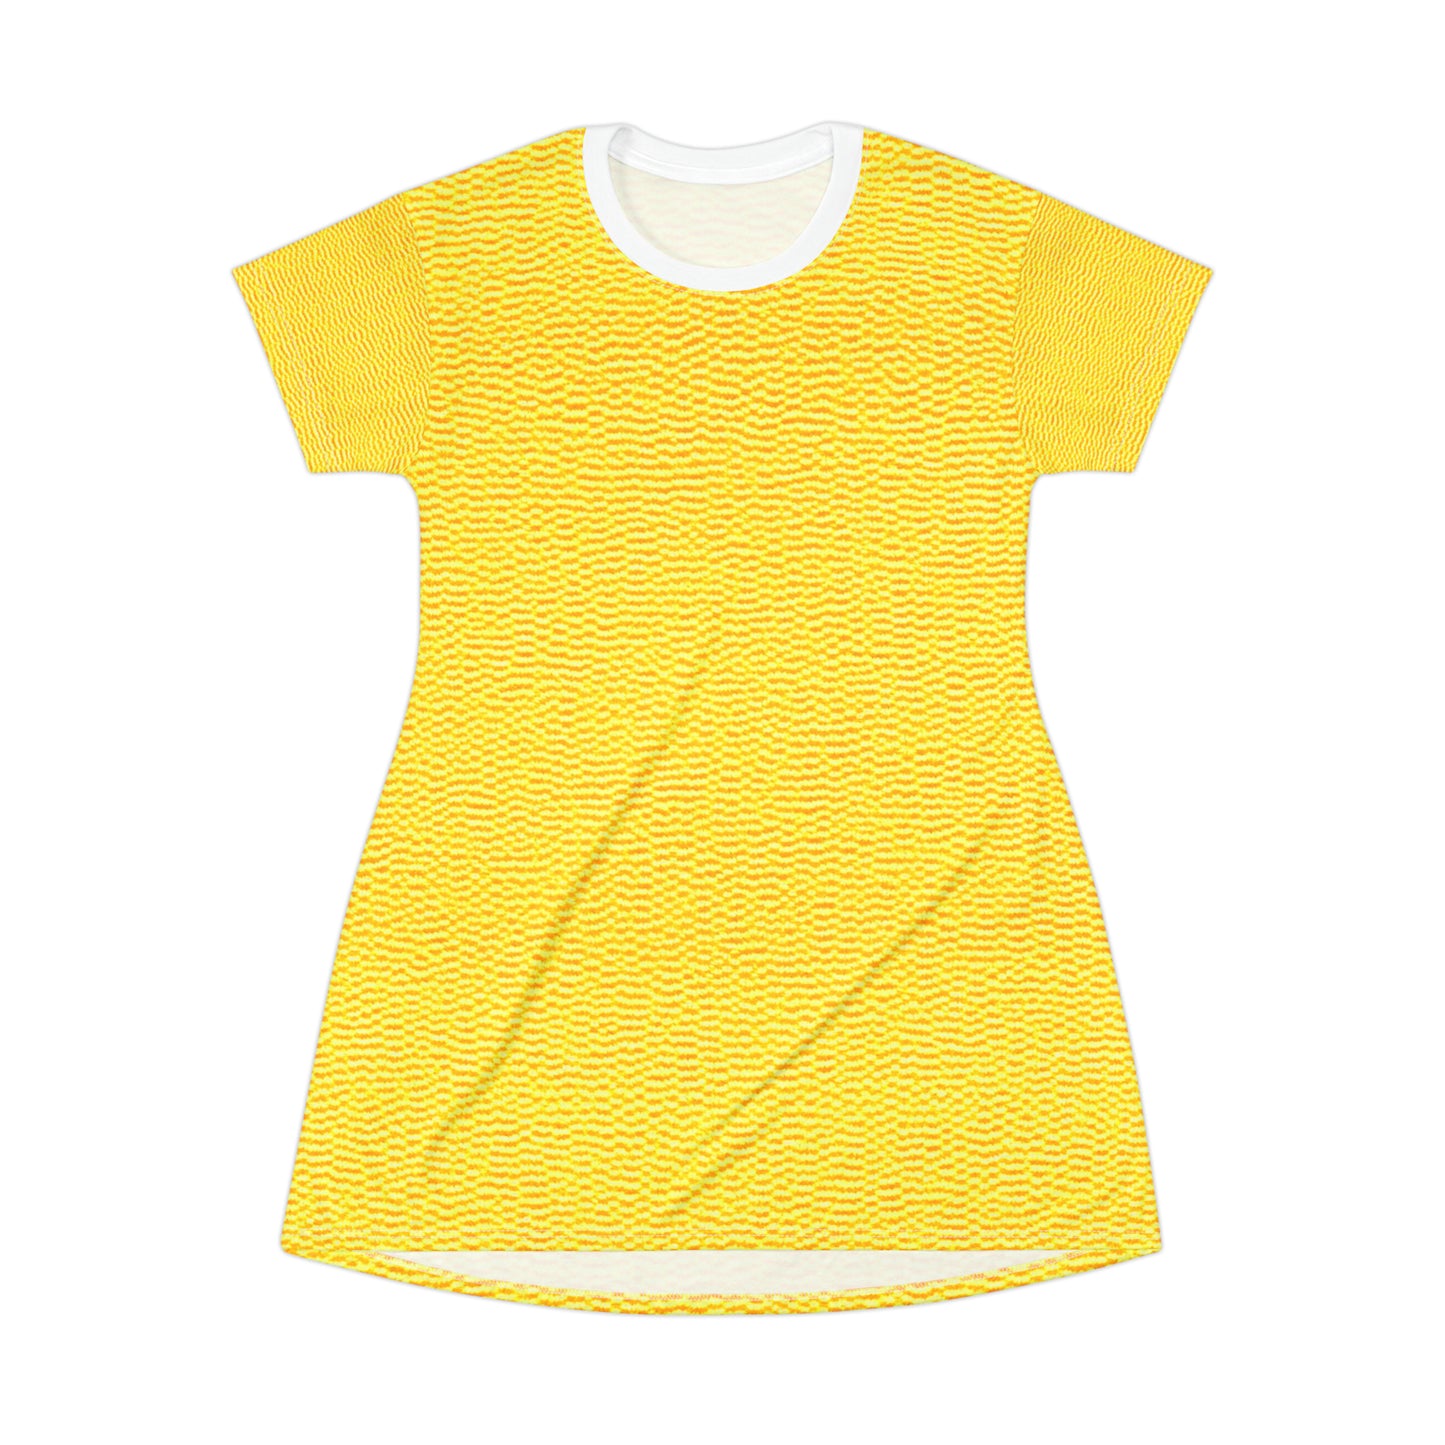 Sunshine Yellow Lemon: Denim-Inspired, Cheerful Fabric - T-Shirt Dress (AOP)